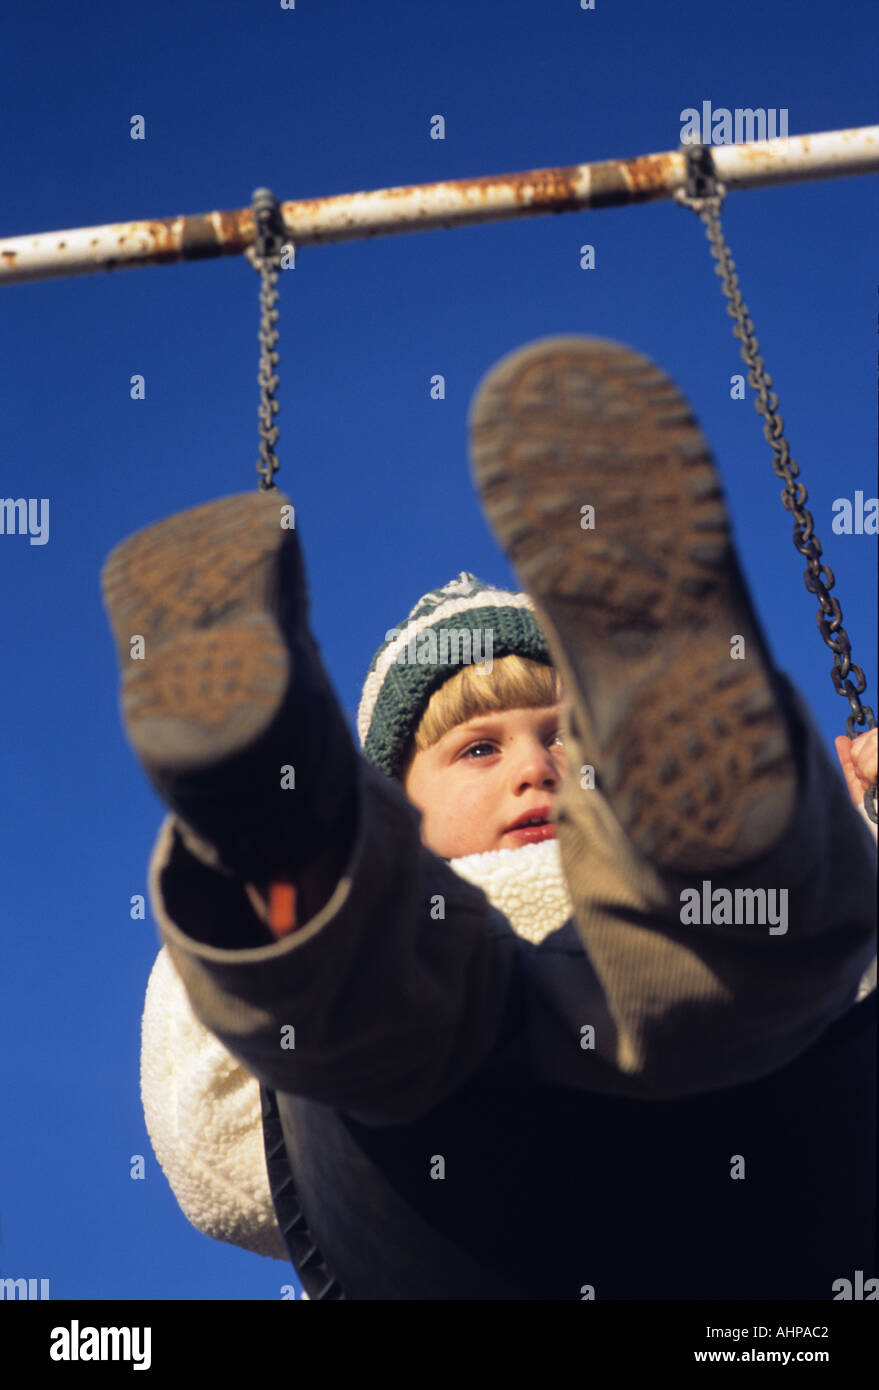 Bambino basculante in altalena ragazzo su Swing Foto Stock